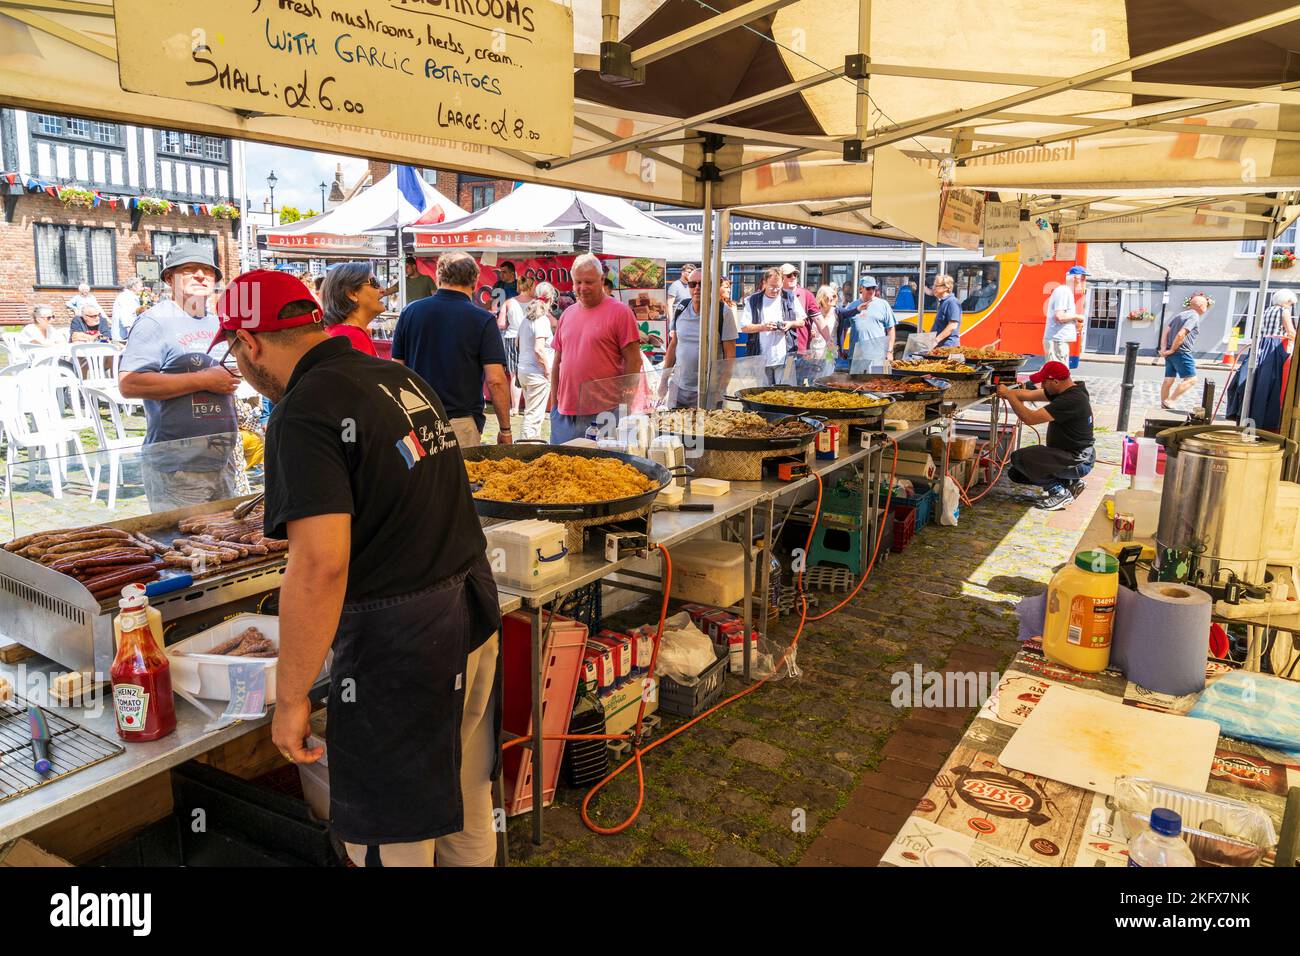 Blick von hinten auf einen offenen Imbissstand auf einem französischen Markt in England mit verschiedenen Pfanne Pfannen von Lebensmitteln, die mit Menschen gekocht werden, die sie betrachten. Stockfoto